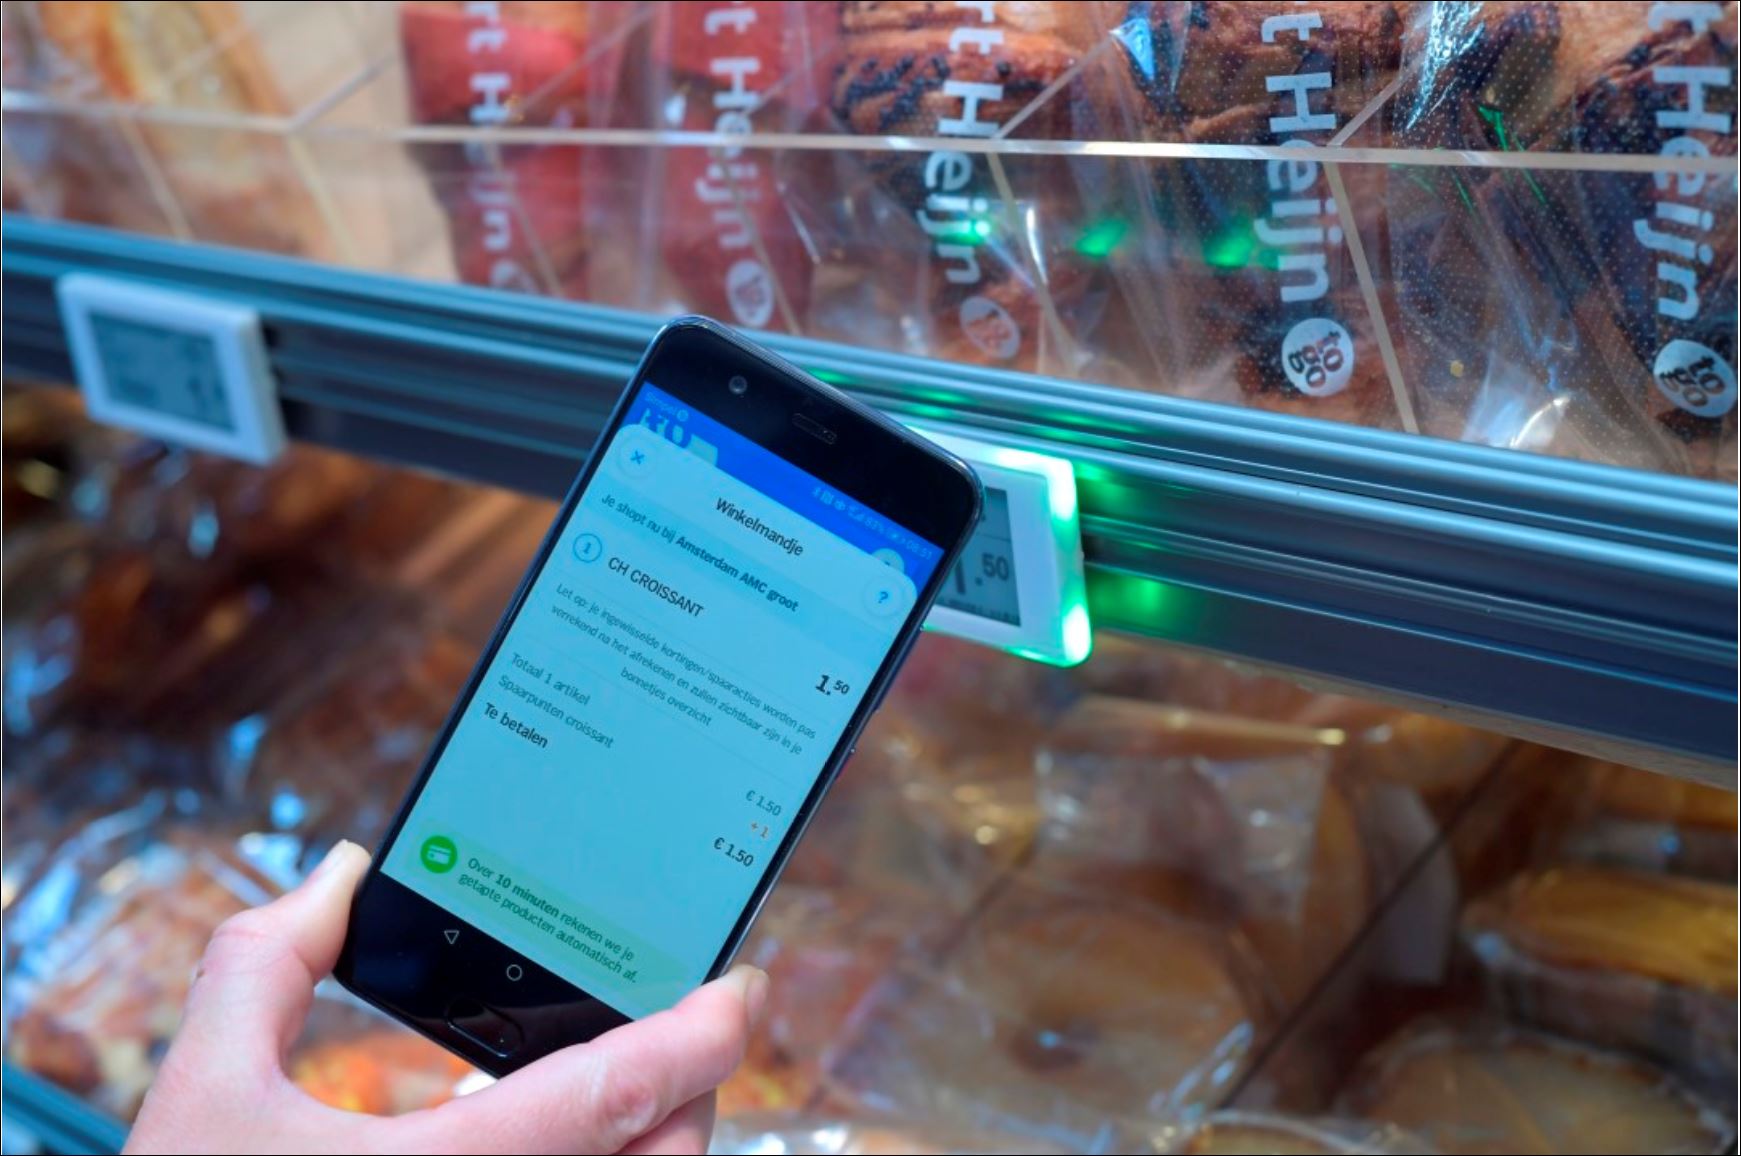  Digitale sessies over instore-innovatie in de supermarktwereld